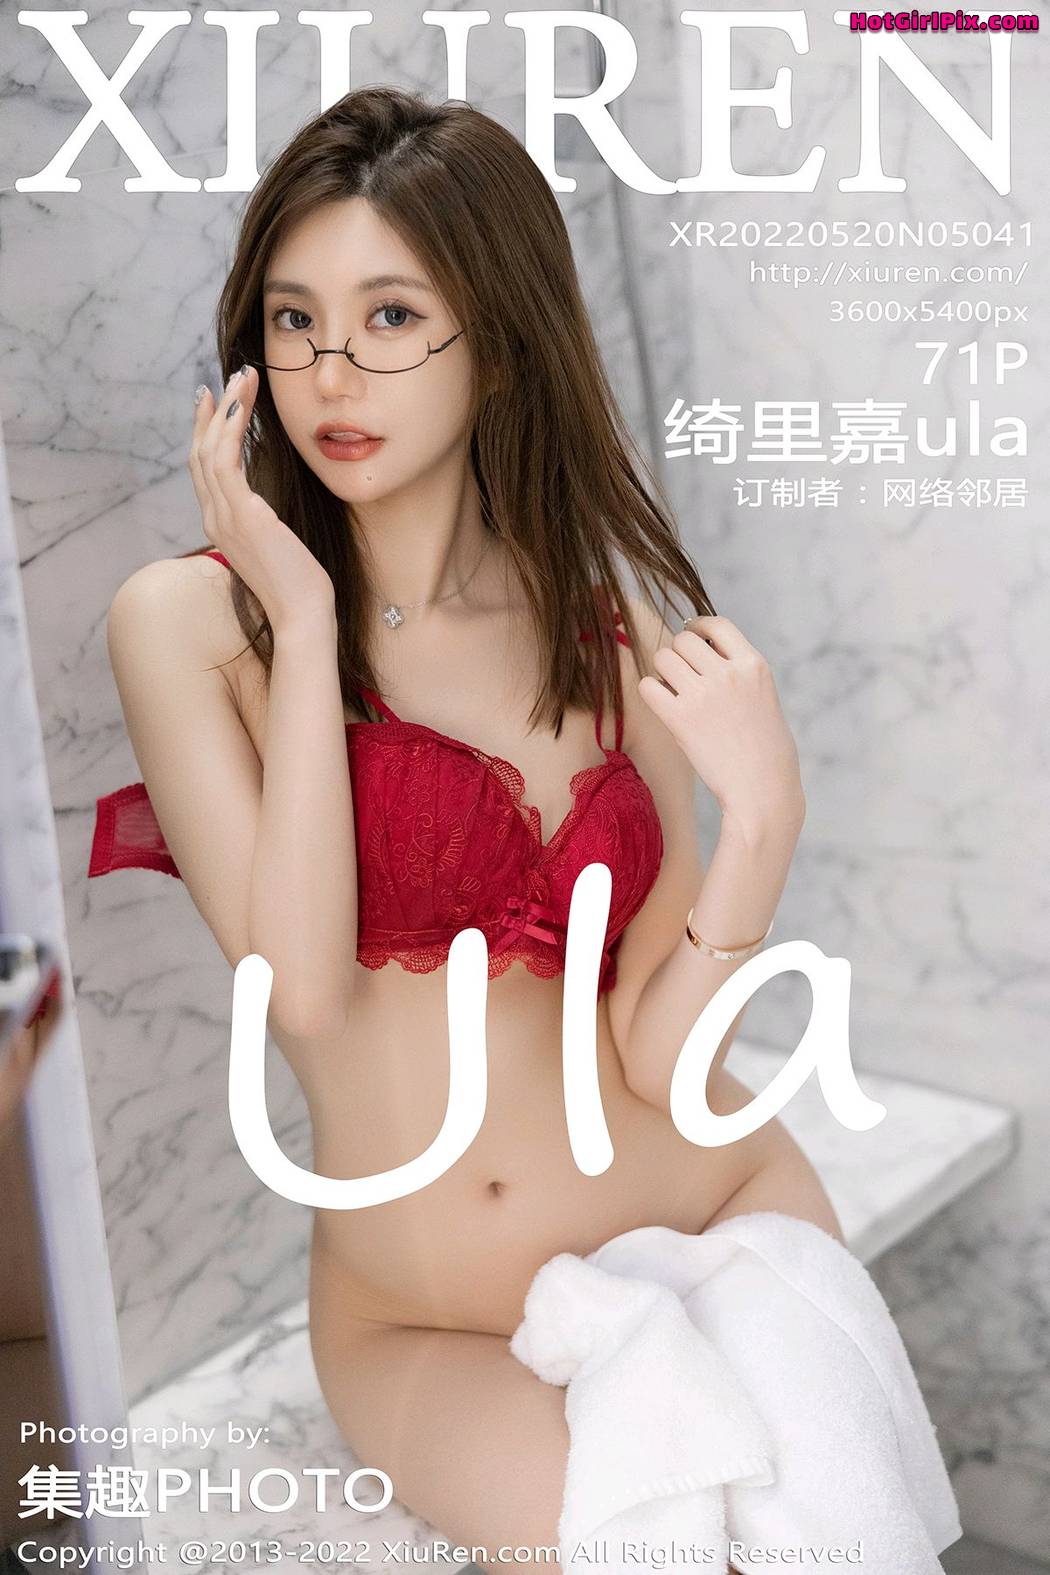 [XIUREN] No.5041 Qi Li Jia 绮里嘉ula Cover Photo